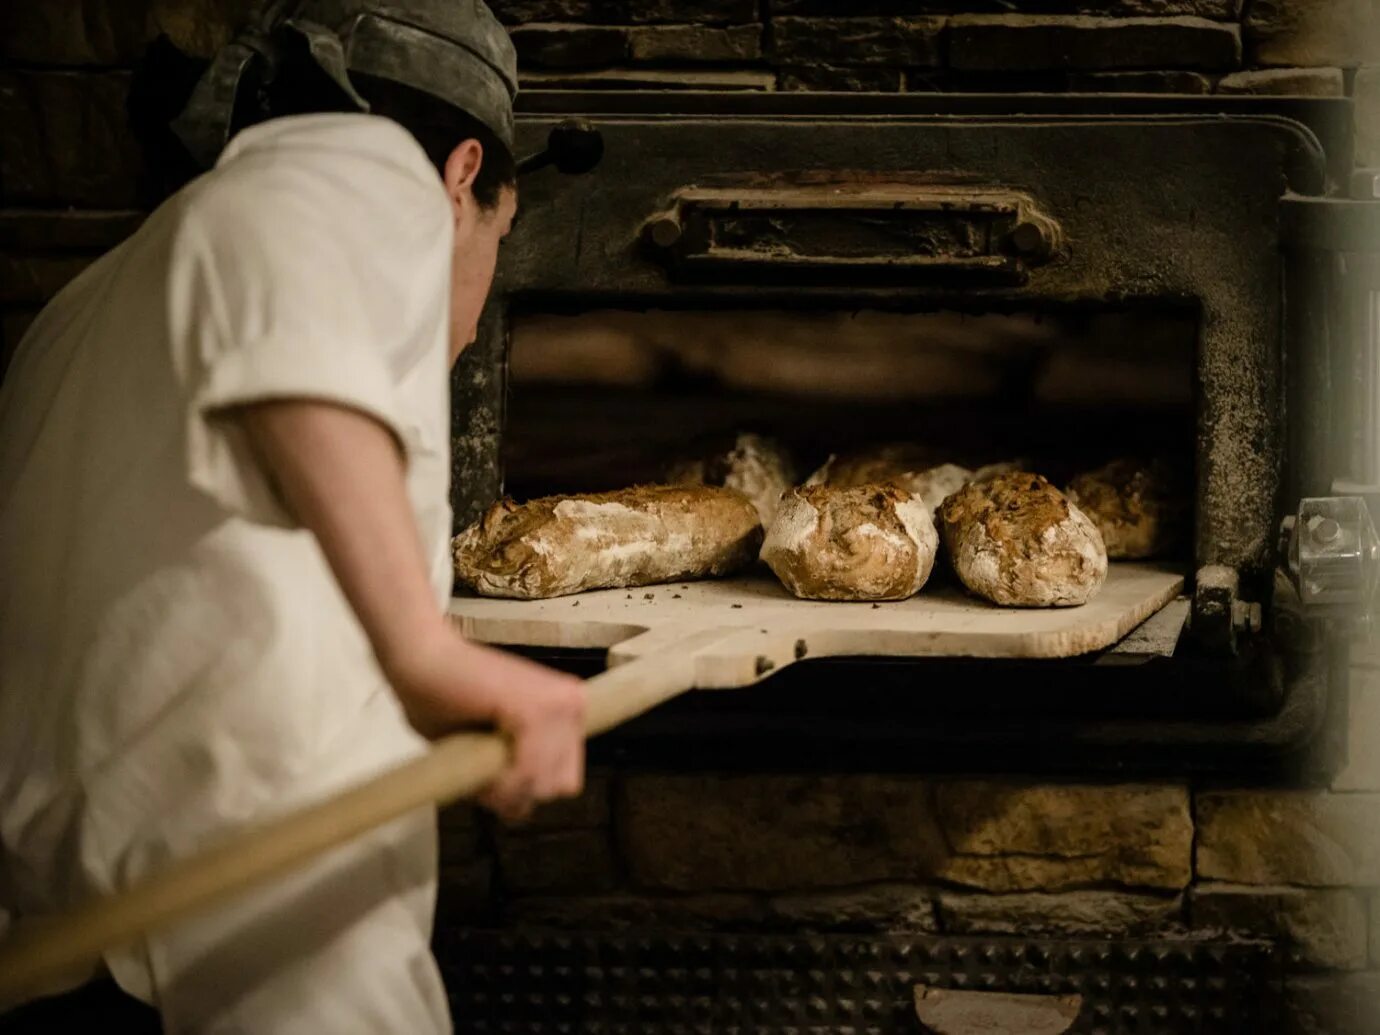 Видео печь хлеб. Хлеб в печи. Пекут хлеб в печи. Печка для хлеба. Пекарь печет хлеб.